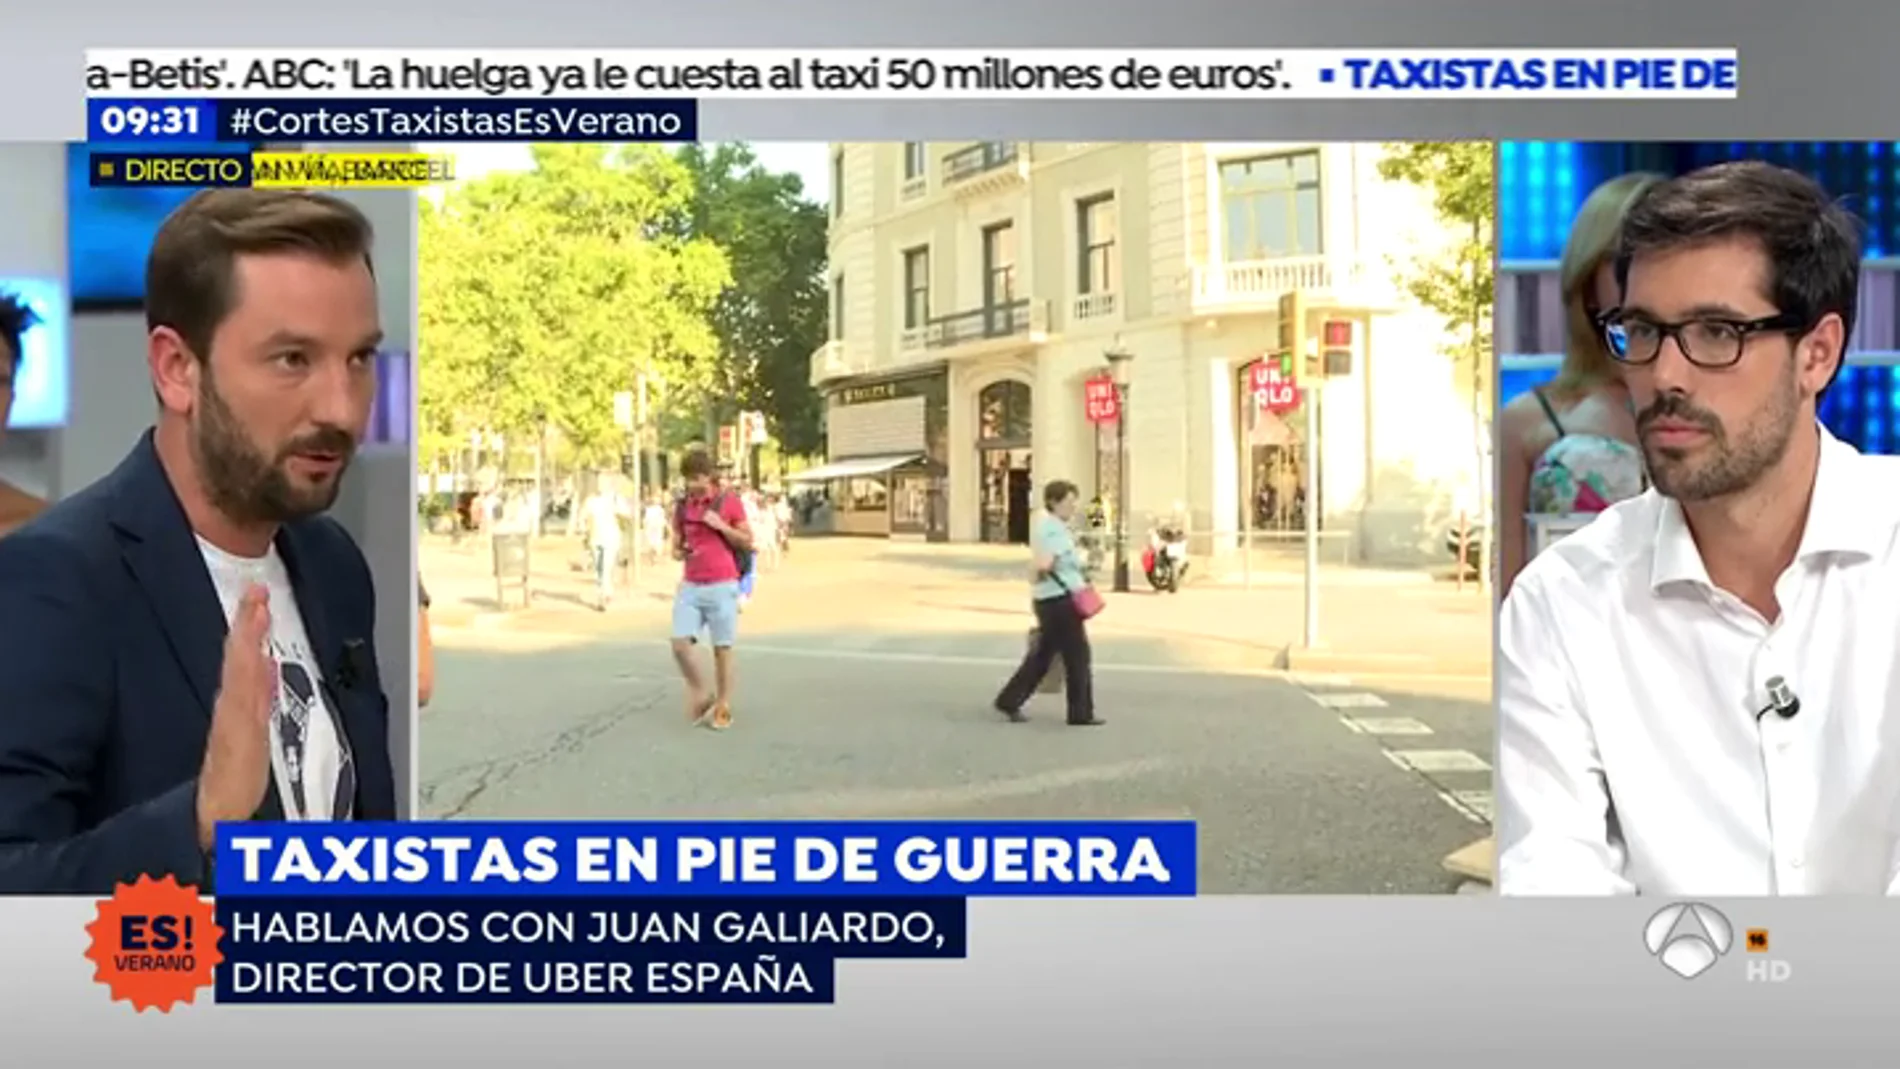 Director de Uber España: "Queremos que el taxi, más que enemigo, sea un socio"